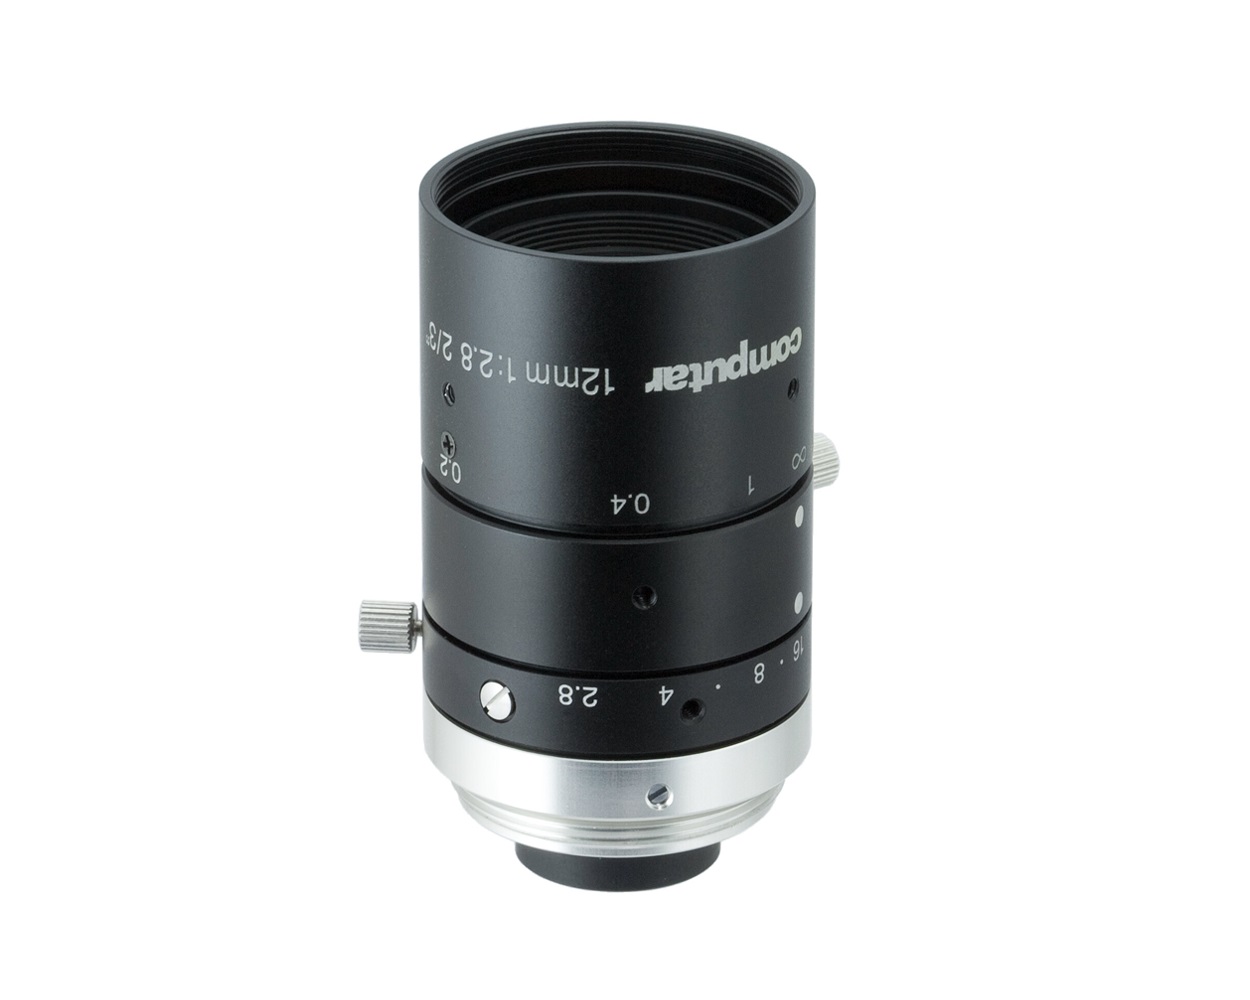 Ống kính - Lens camera Computar M1228-MPW3